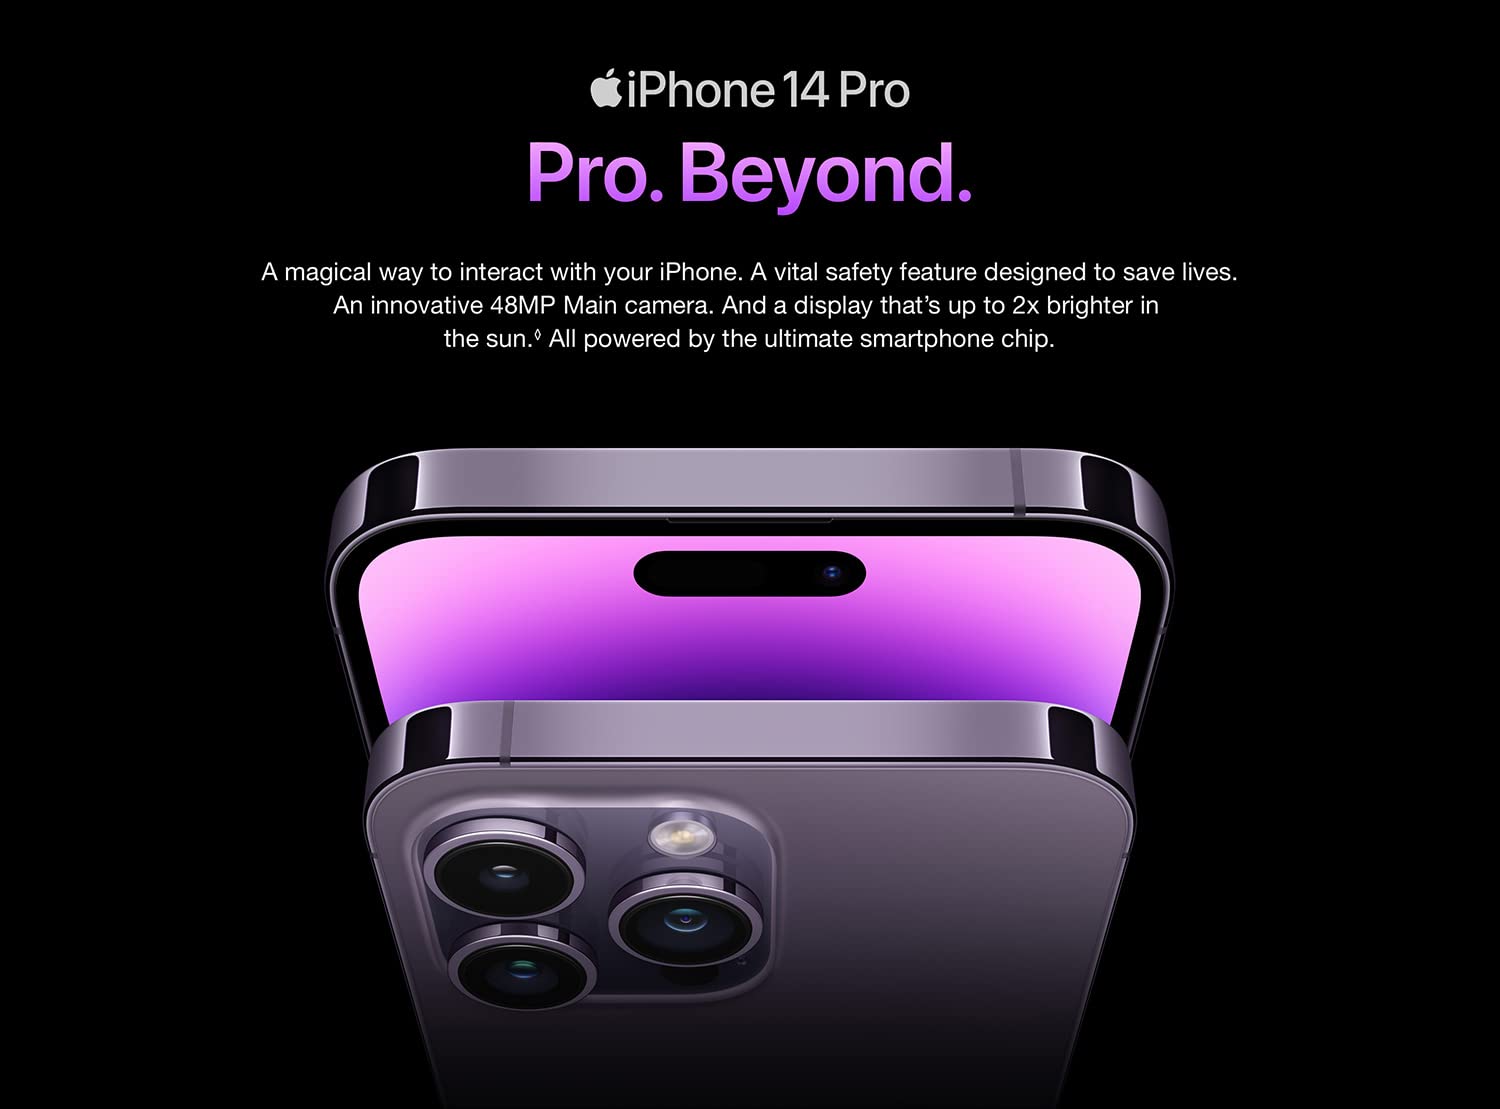 iphone 14 pro | apple iphone 14 pro | iphone 14 pro price in uae